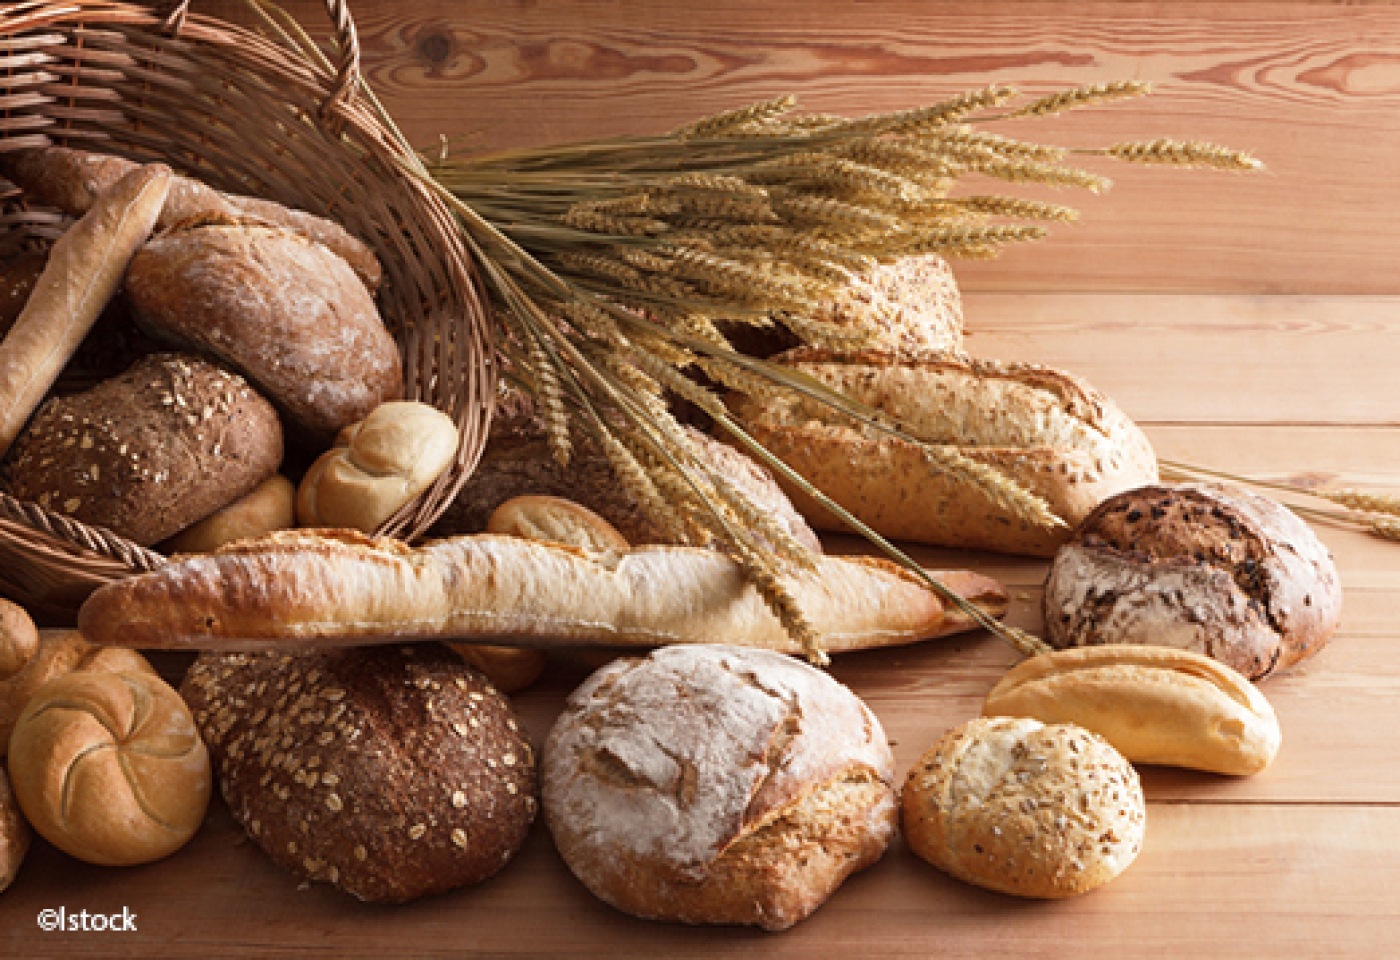 Mise en garde les consommateurs marocains en ce qui concerne le pain